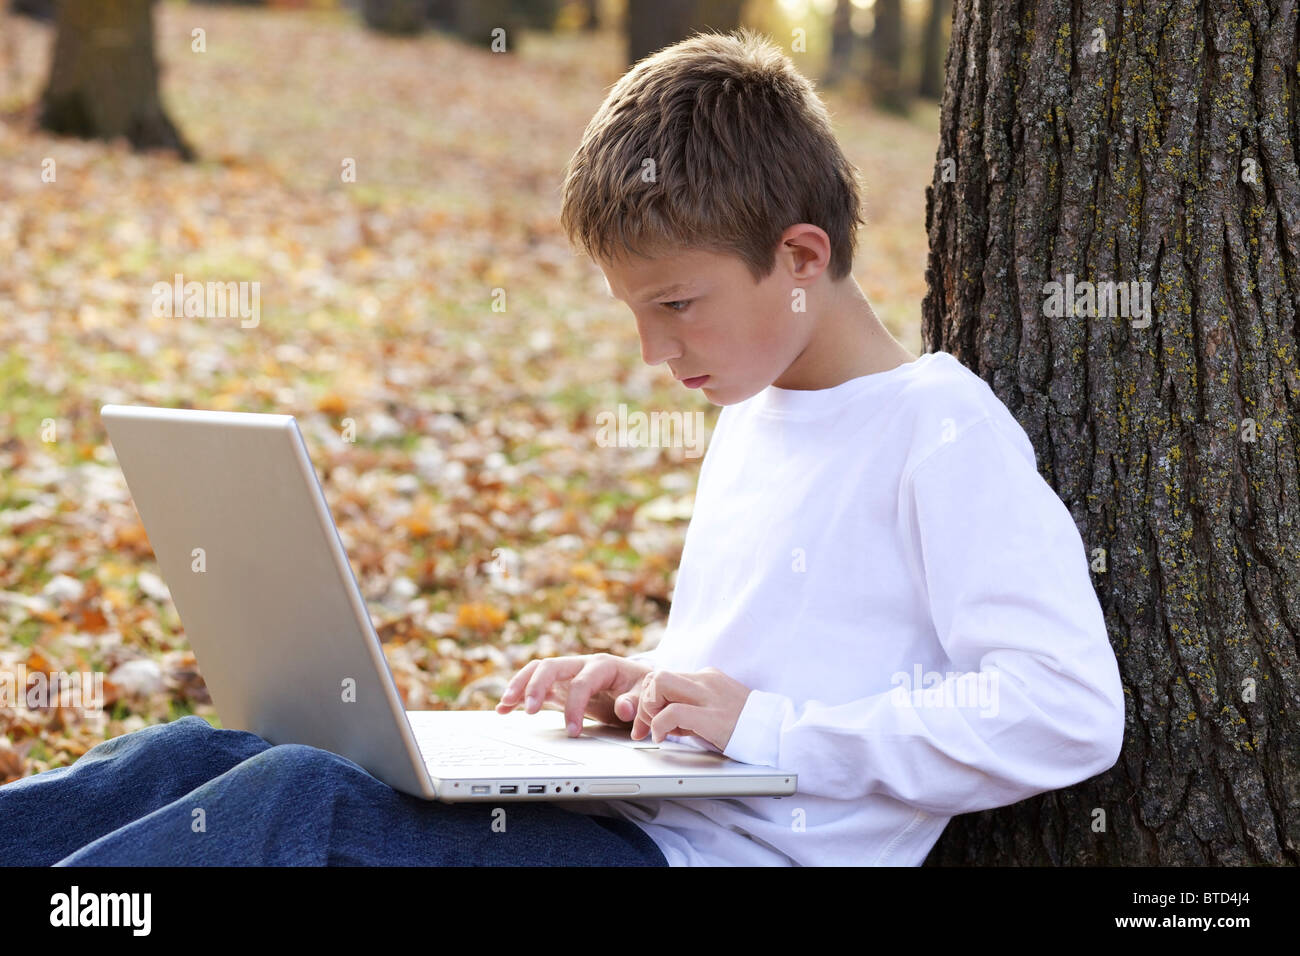 Jeune garçon en utilisant un ordinateur portable outdoor Banque D'Images